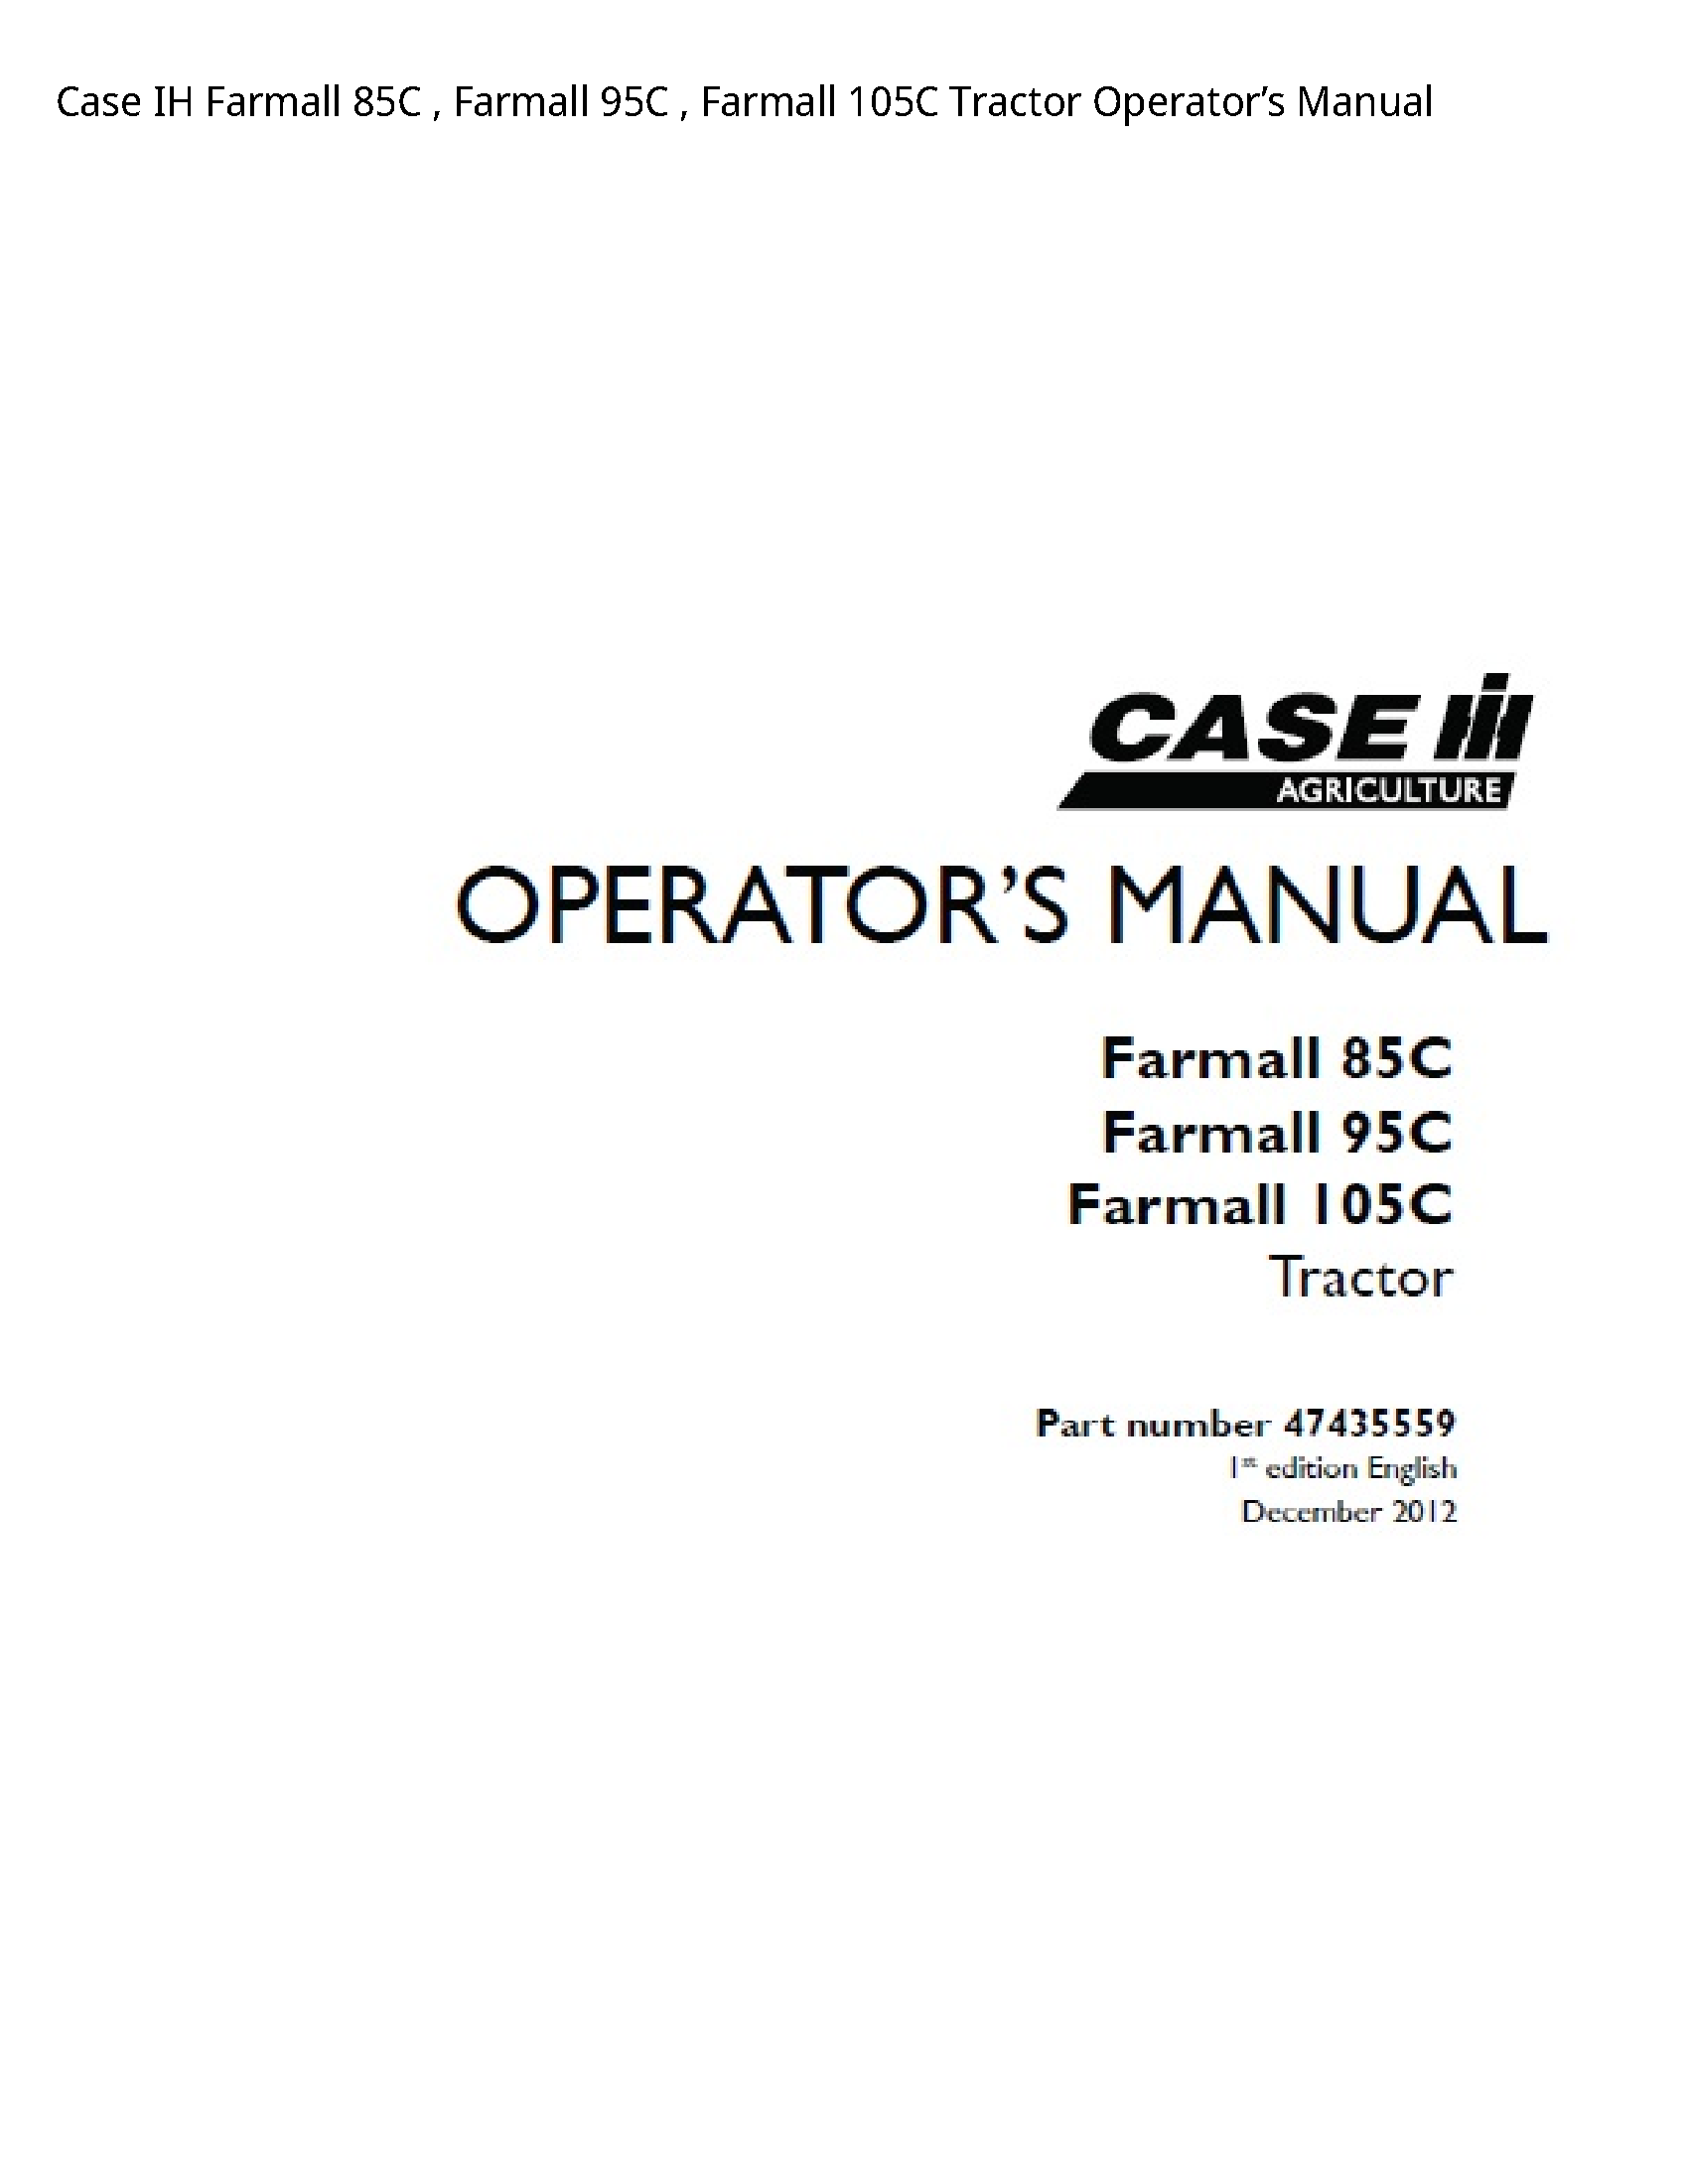 Case/Case IH 85C IH Farmall Farmall Farmall Tractor Operator’s manual